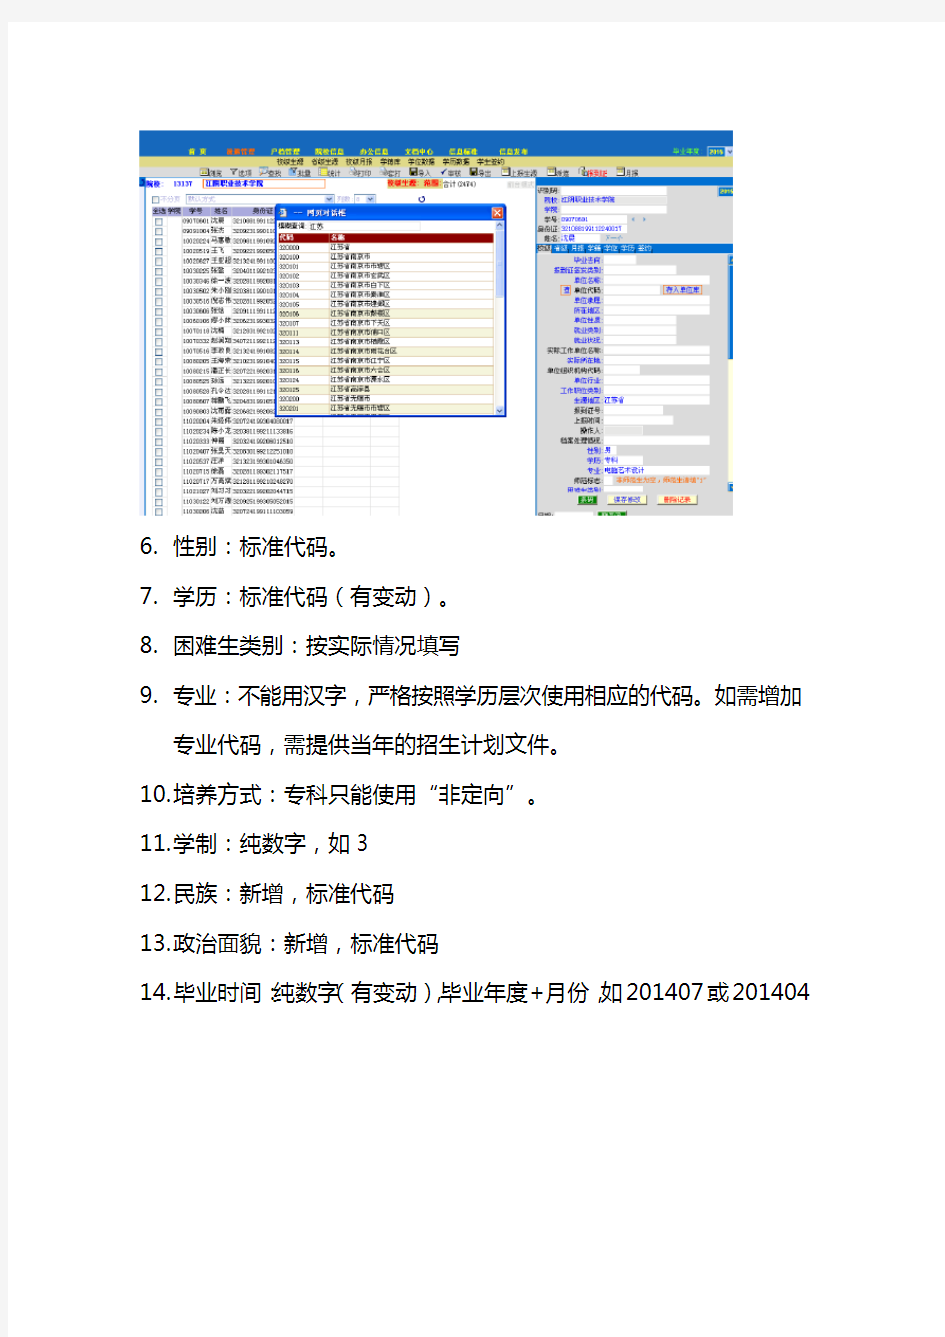 江苏省毕业生就业管理信息系统(网络版)数据填报知识交流